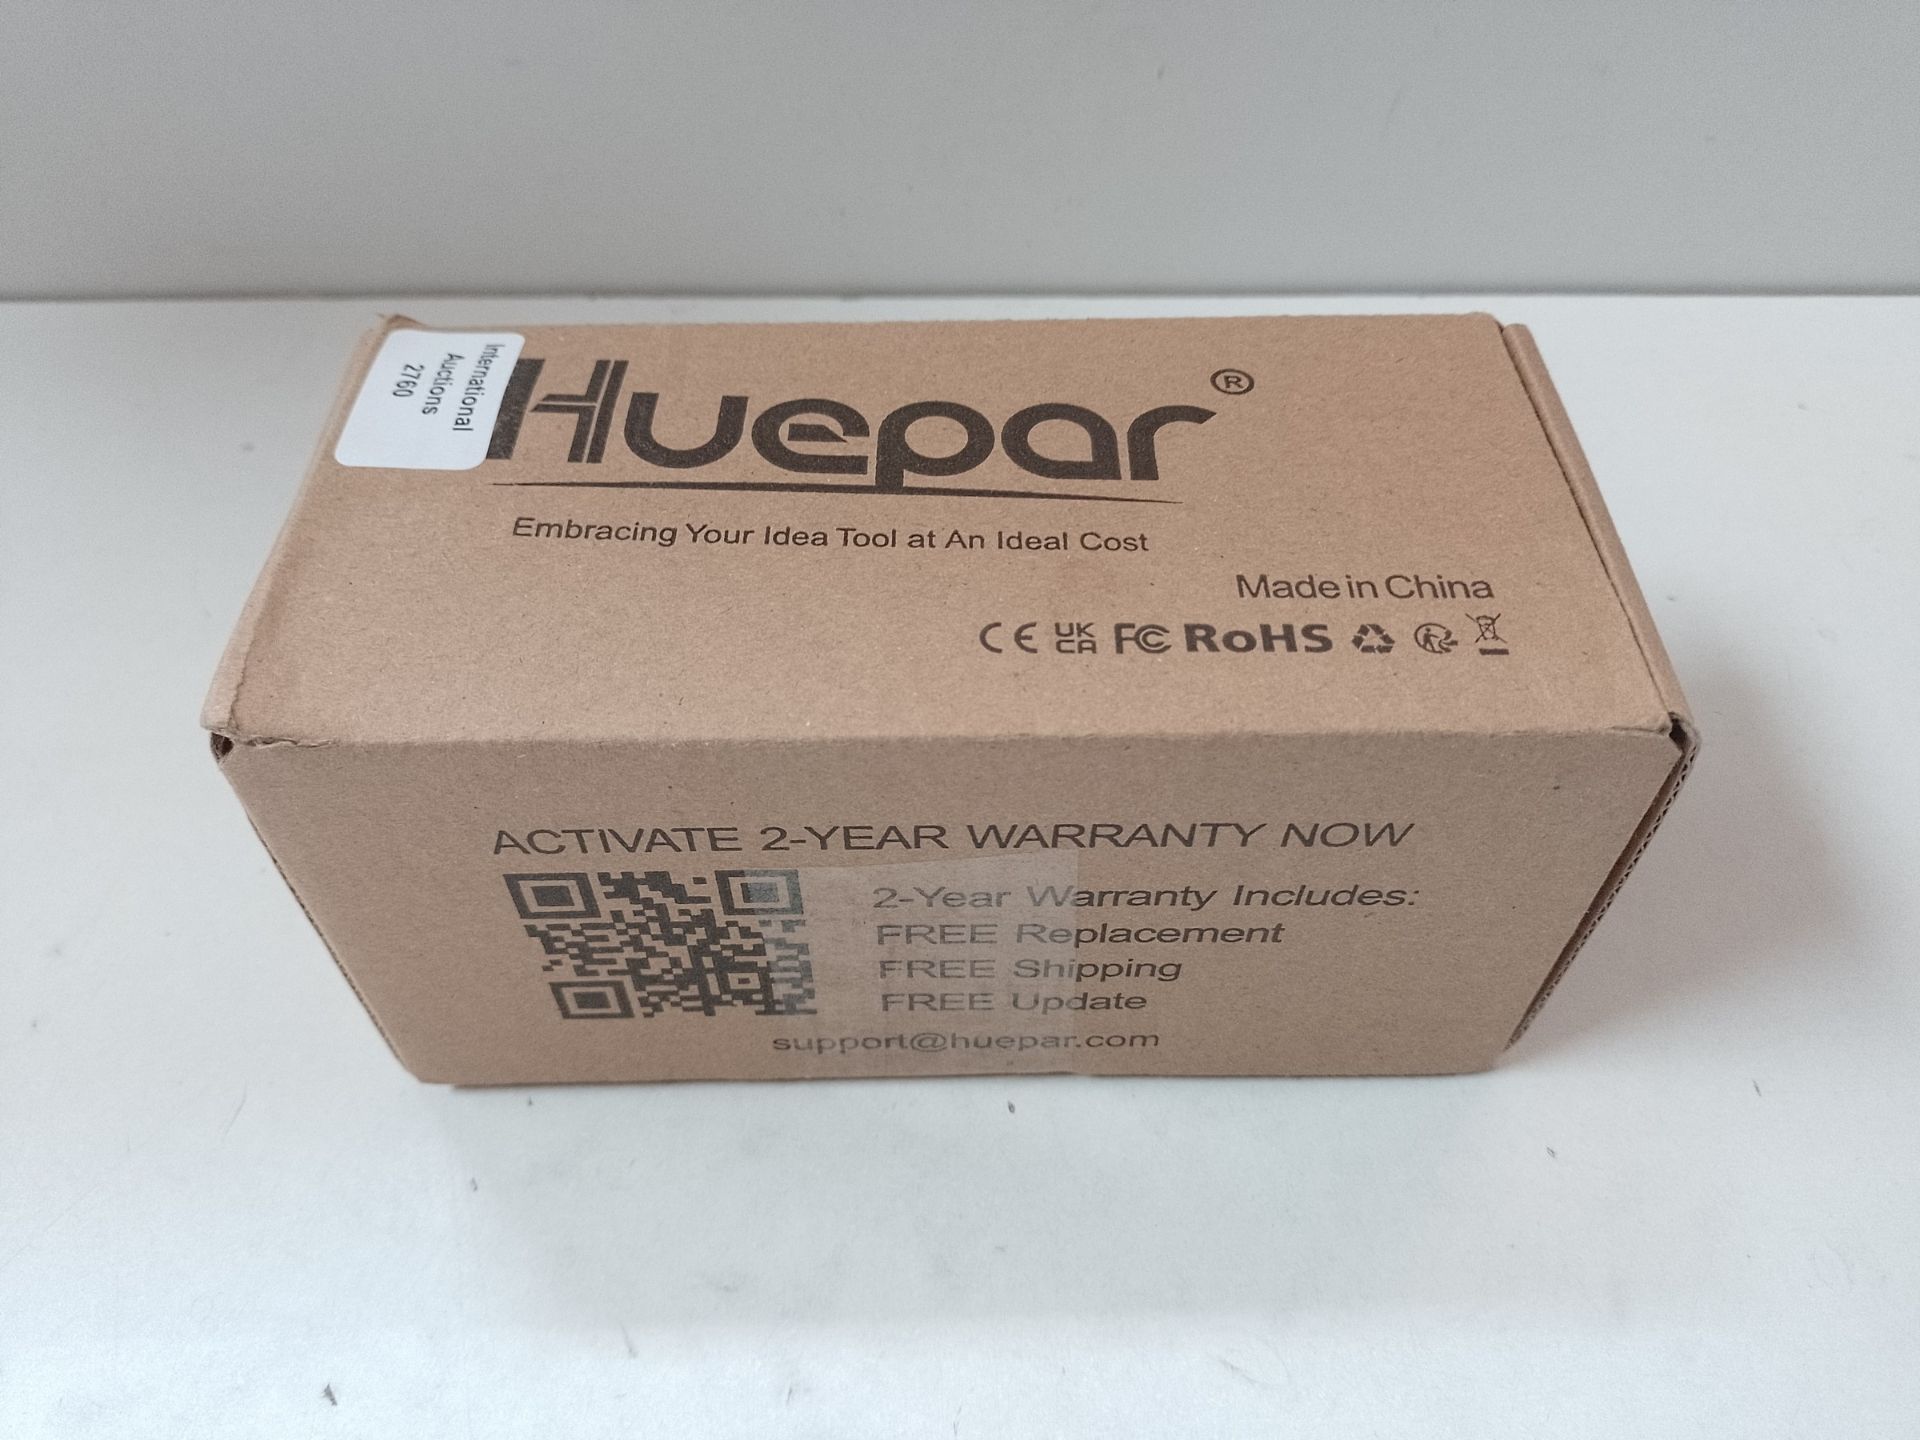 RRP £36.53 Huepar LR-6RG Laser Detector only for Huepar Laser Level with Pulse Mode - Image 2 of 2